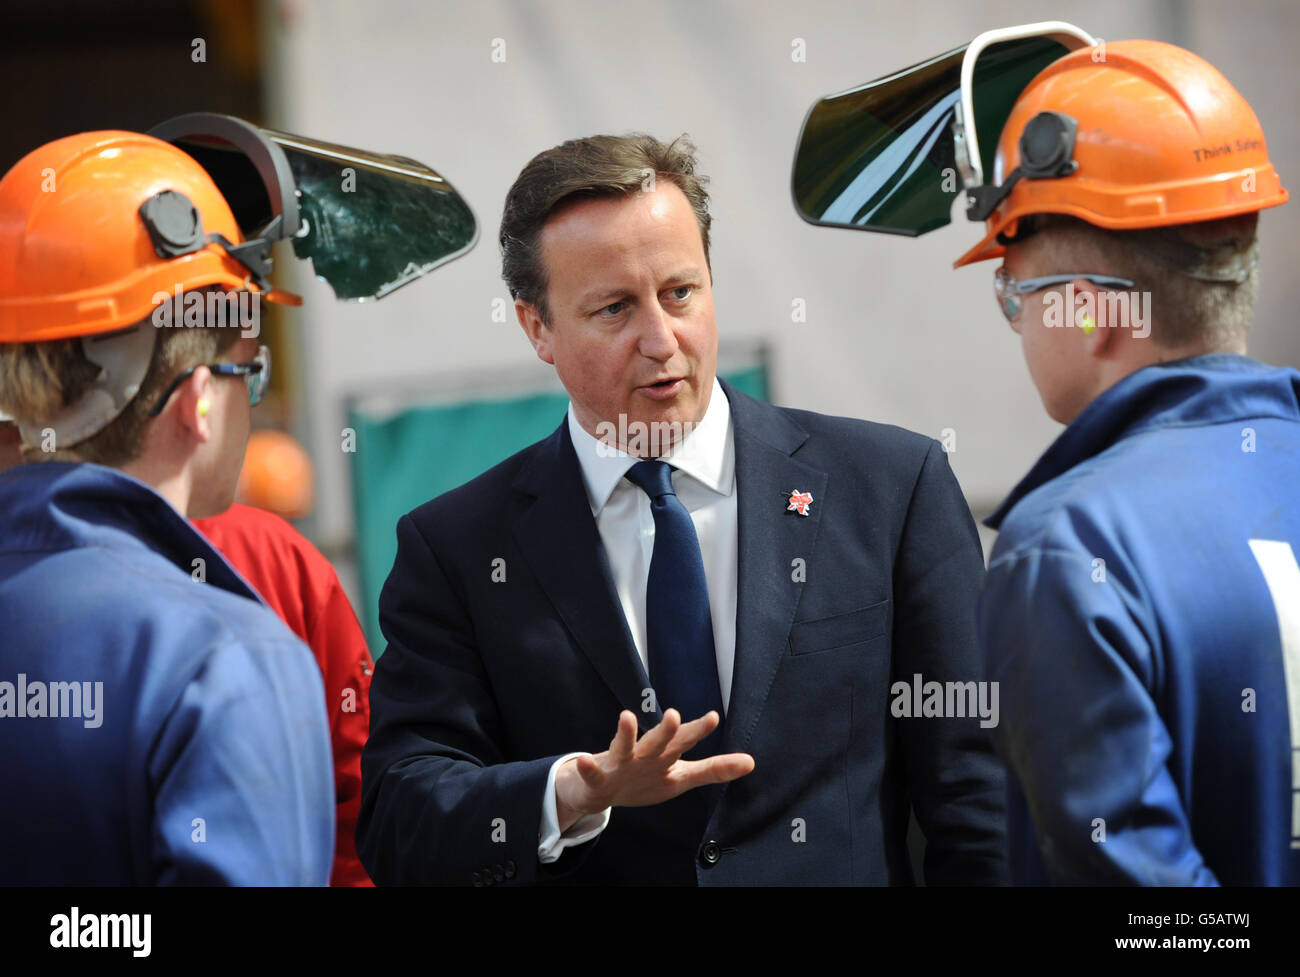 Il primo ministro David Cameron incontra lavoratori a BiFab, una società di costruzioni a Buckhaven, Fife, che produce componenti per piattaforme petrolifere e parchi eolici a energia rinnovabile. Foto Stock